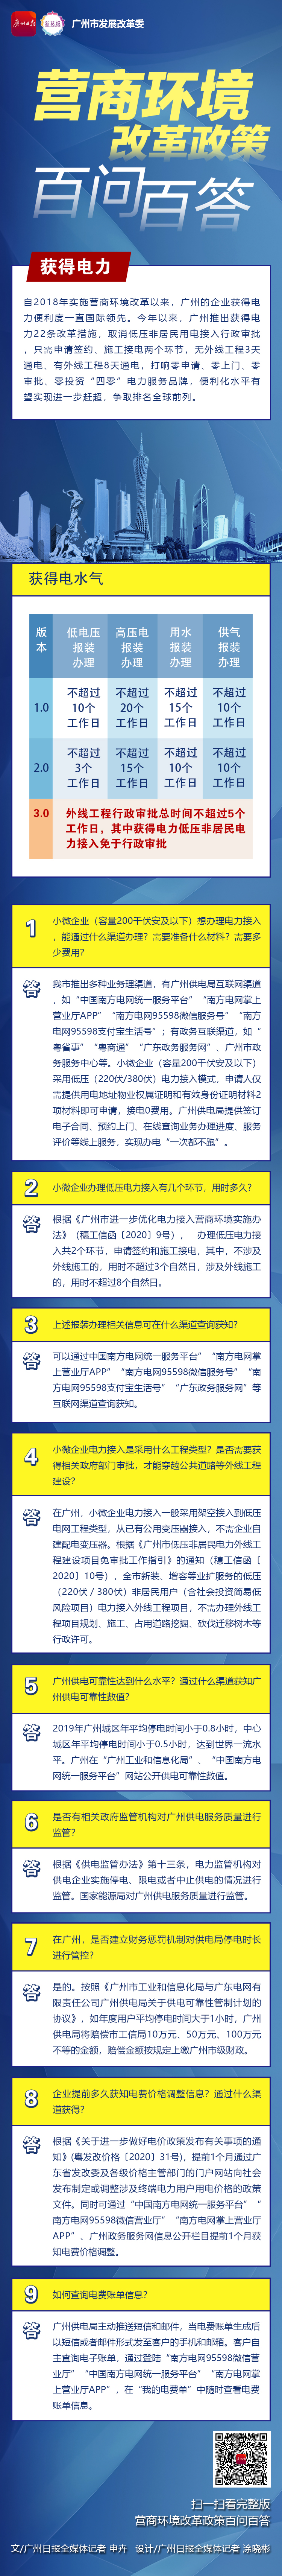 广州营商一图读懂-3获得电力-广州日报.jpg